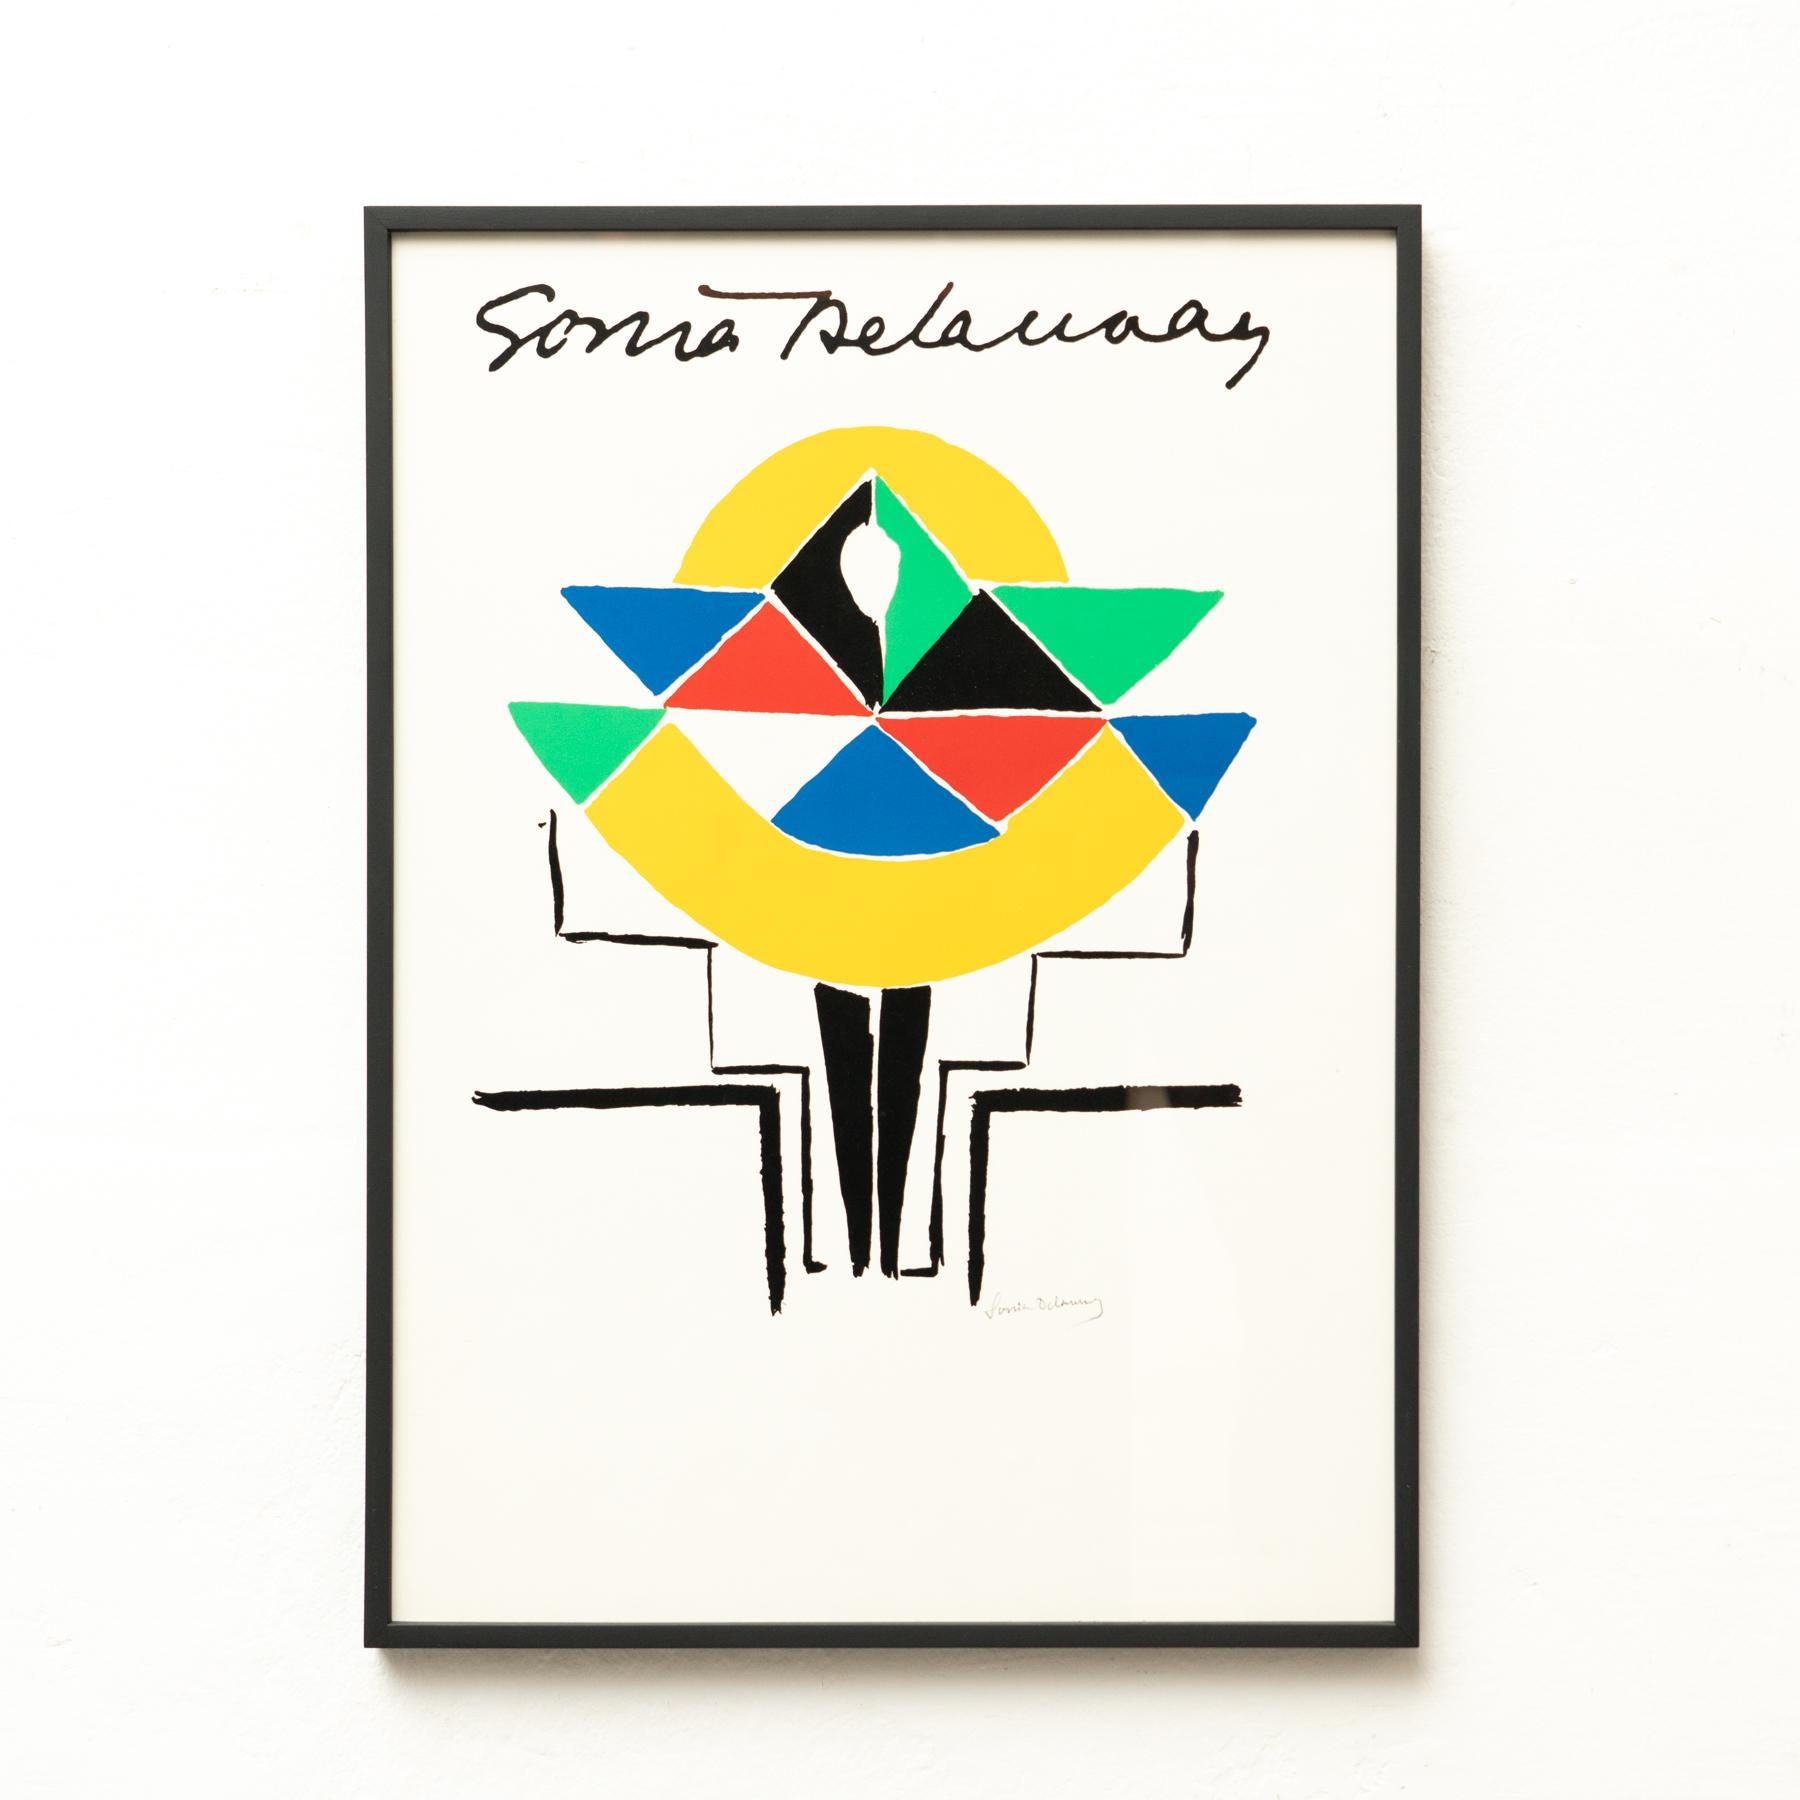 Lithografie von Sonia Delaunay.
Provenienz: Frankreich

Signiert auf der Platte.

Sonia Delaunay (1885-1979) war eine in der Ukraine geborene französische Künstlerin, die den größten Teil ihres Arbeitslebens in Paris verbrachte und zusammen mit